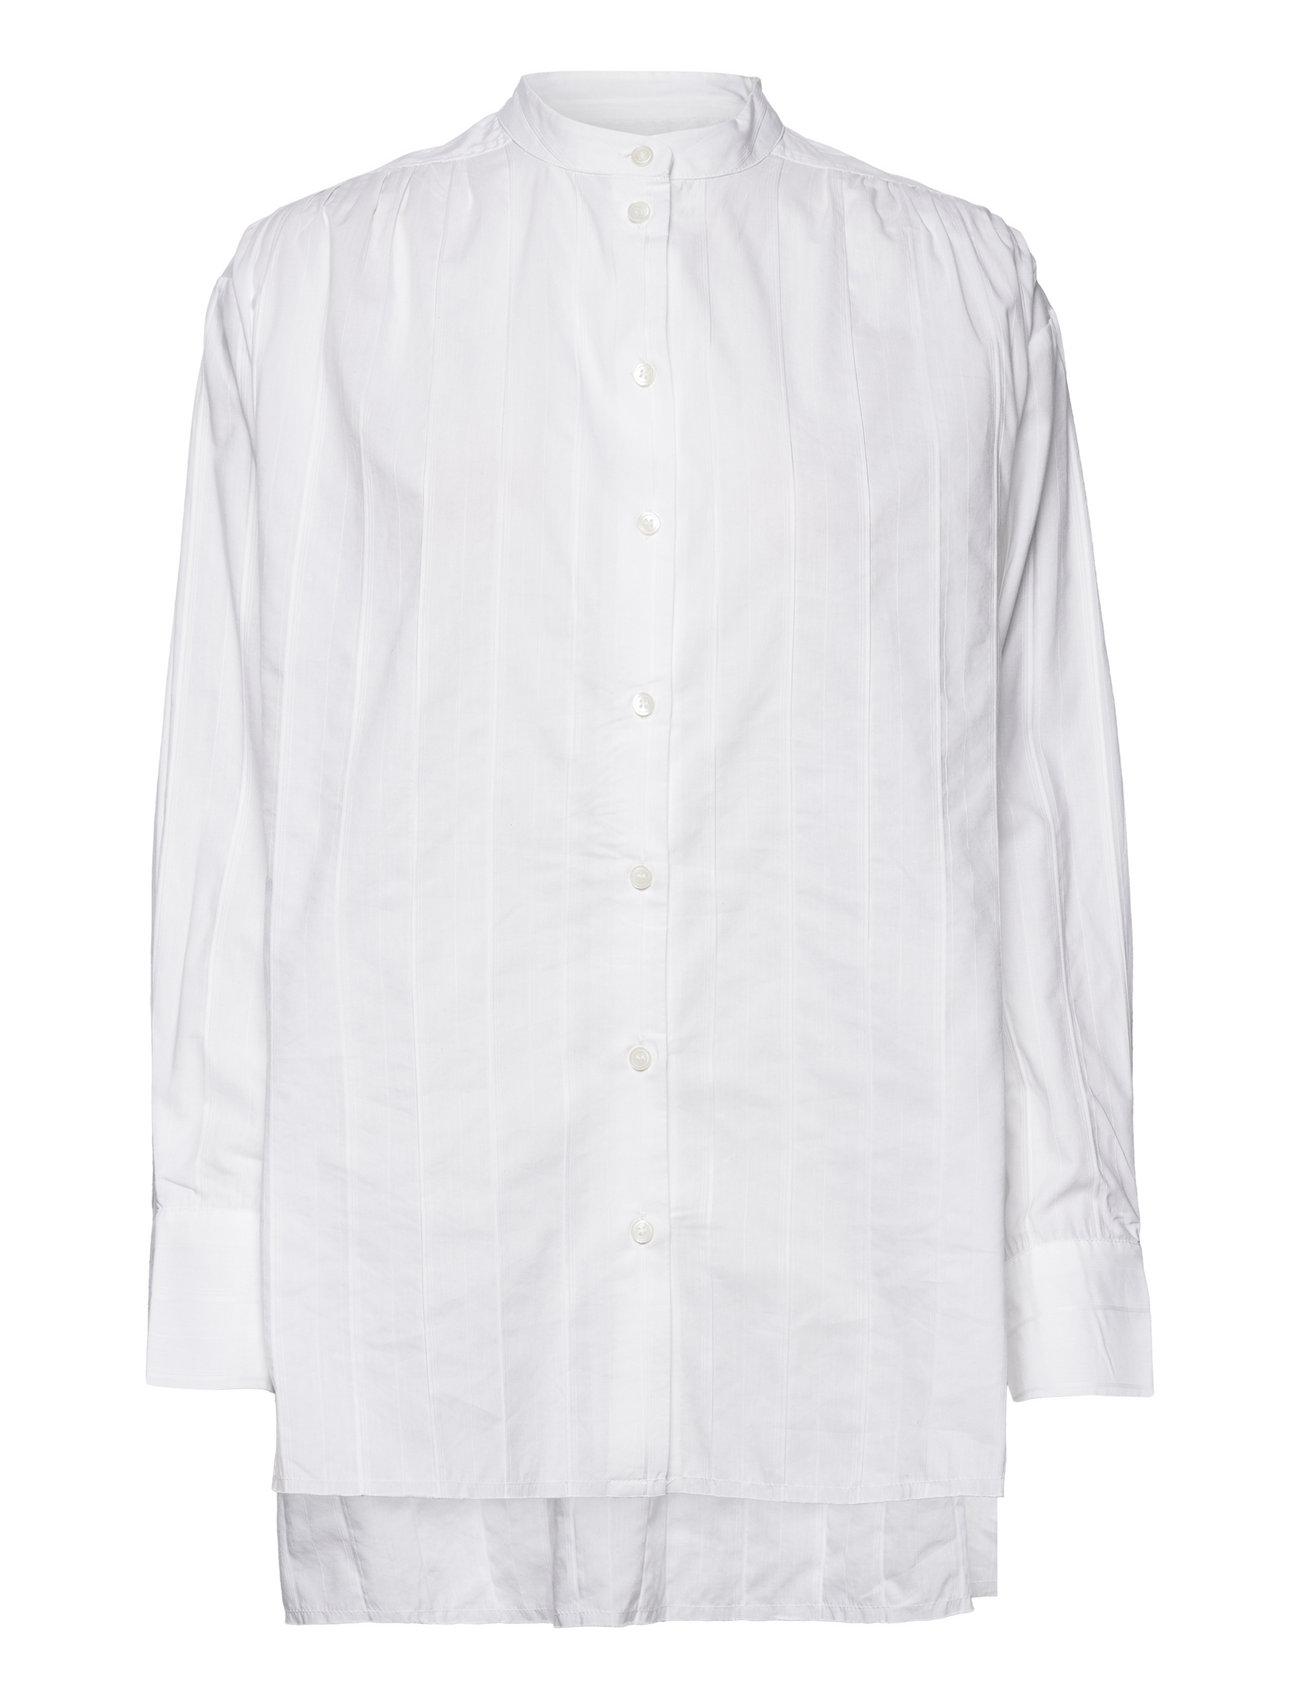 2Nd Raiden - Jacquard Stripe Tops Blouses Long-sleeved White 2NDDAY